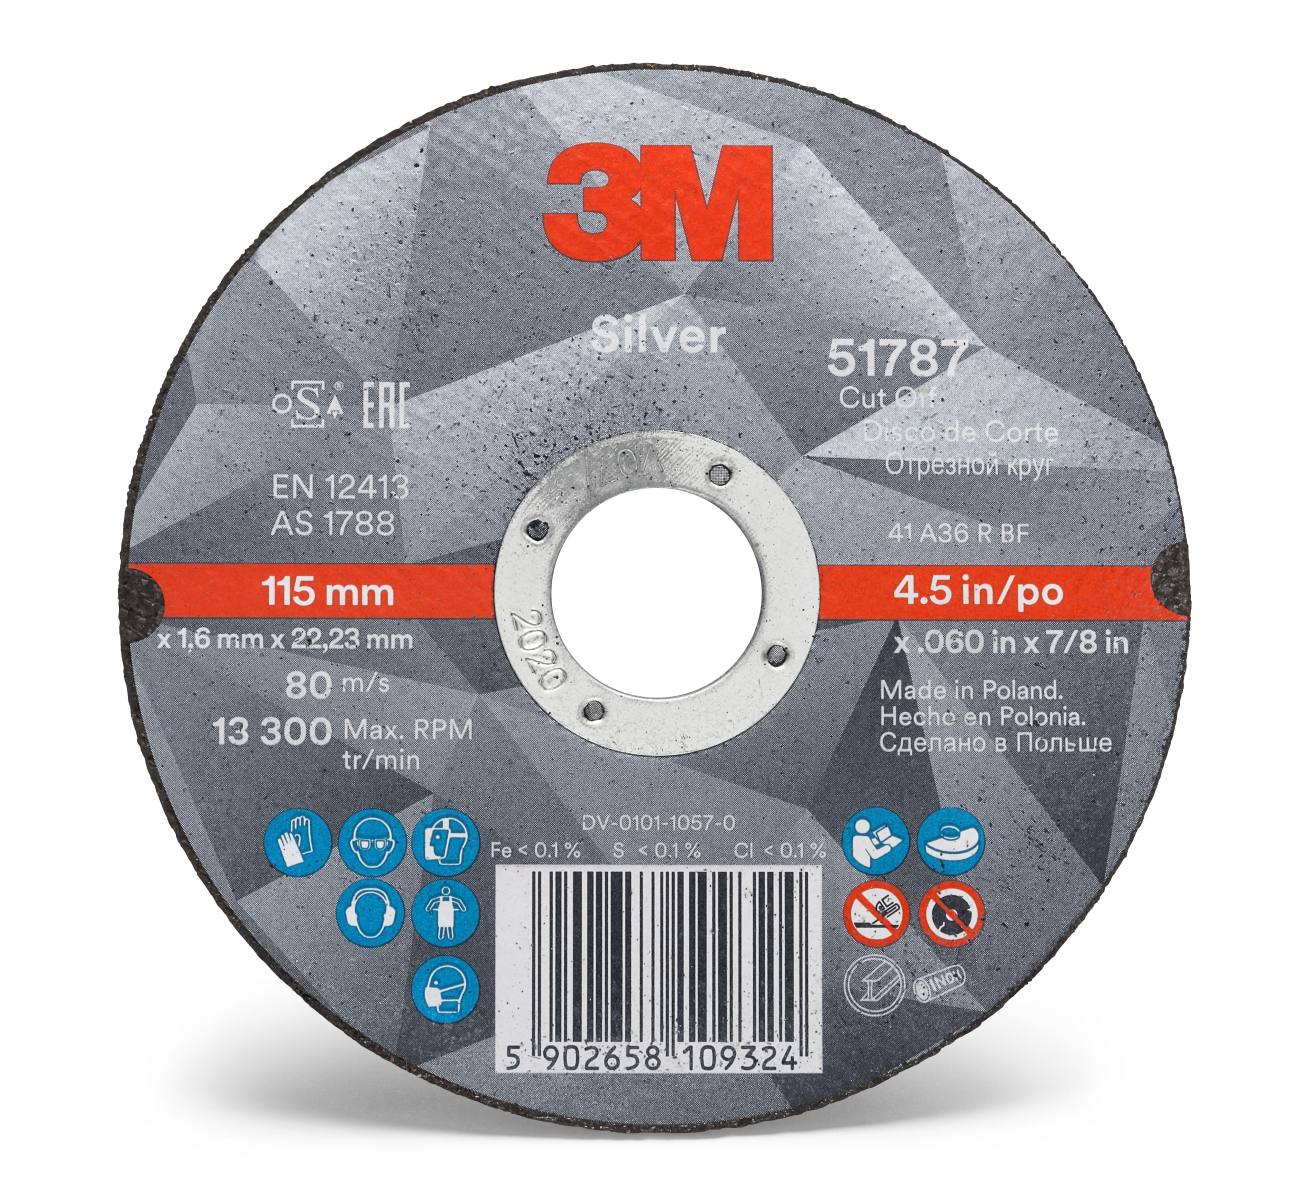 3M Silver Cut-Off Wheel cutting-off wheel, 125 mm, 2.0 mm, 22.23 mm, T41, 51795